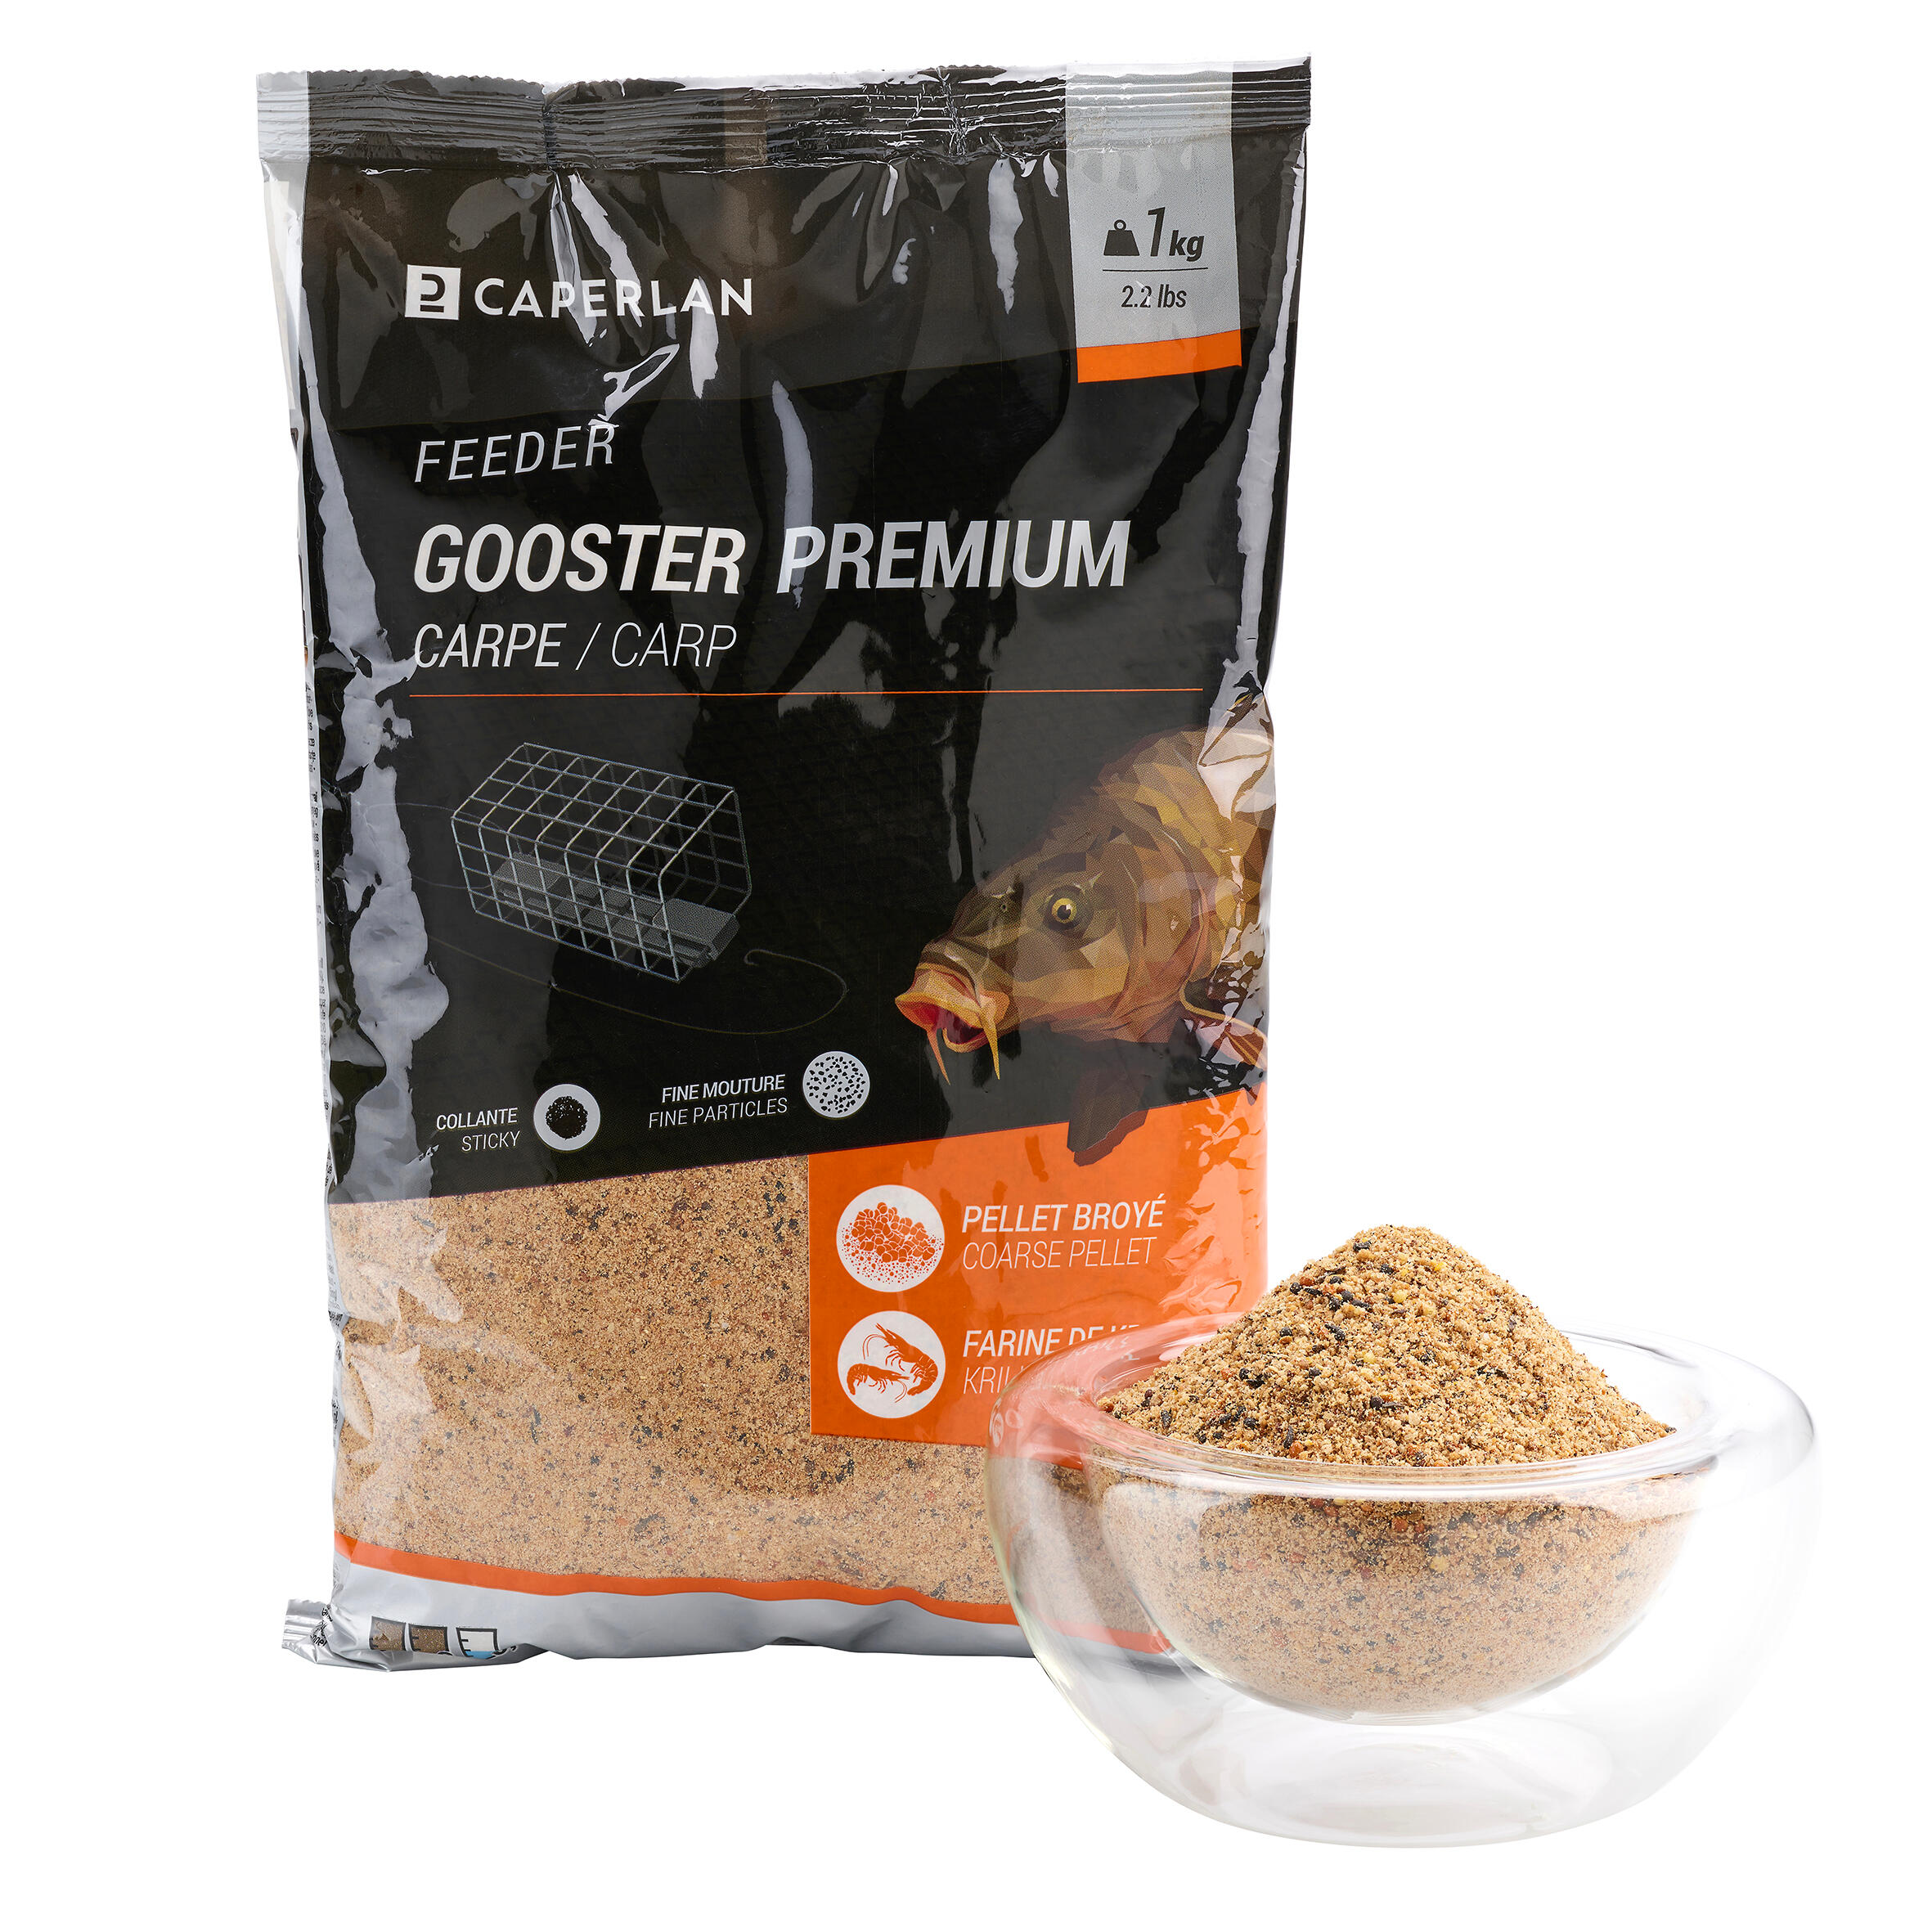 Gooster premium carp feeder bait - 1kg 1/7